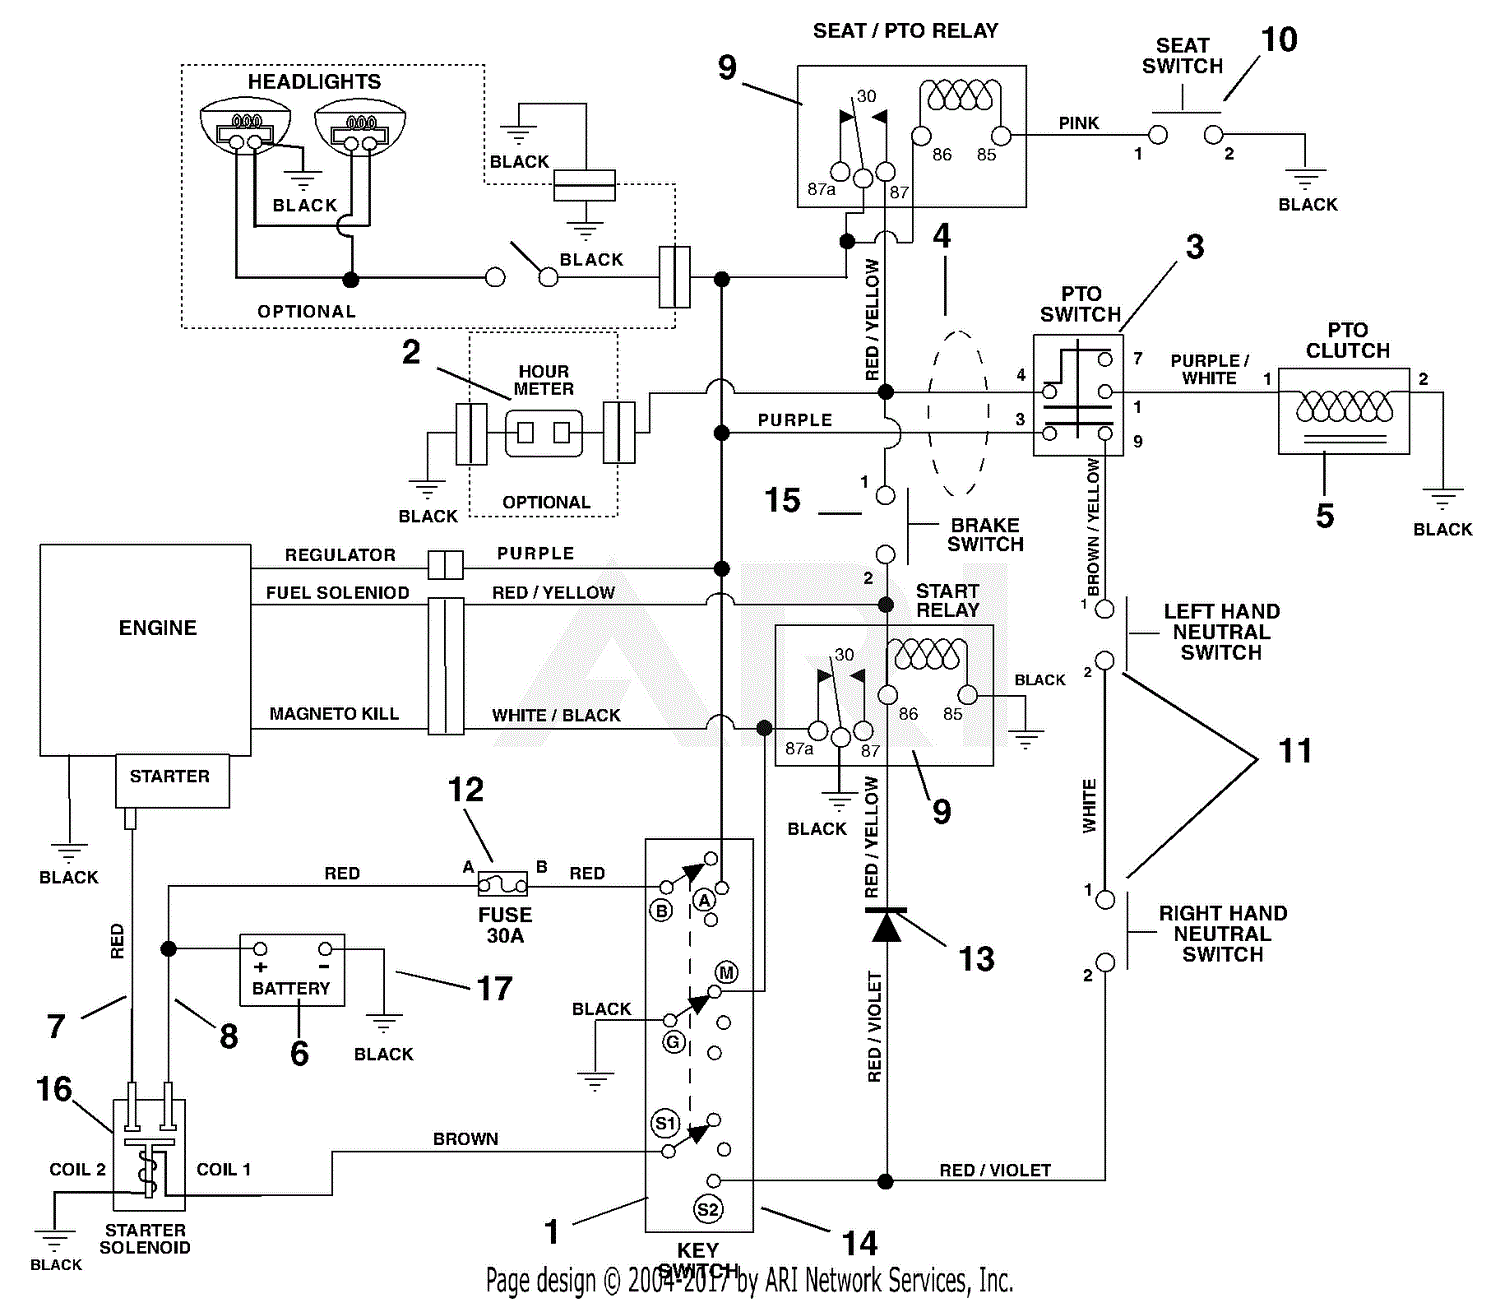 wiring diagram for saber model 1742